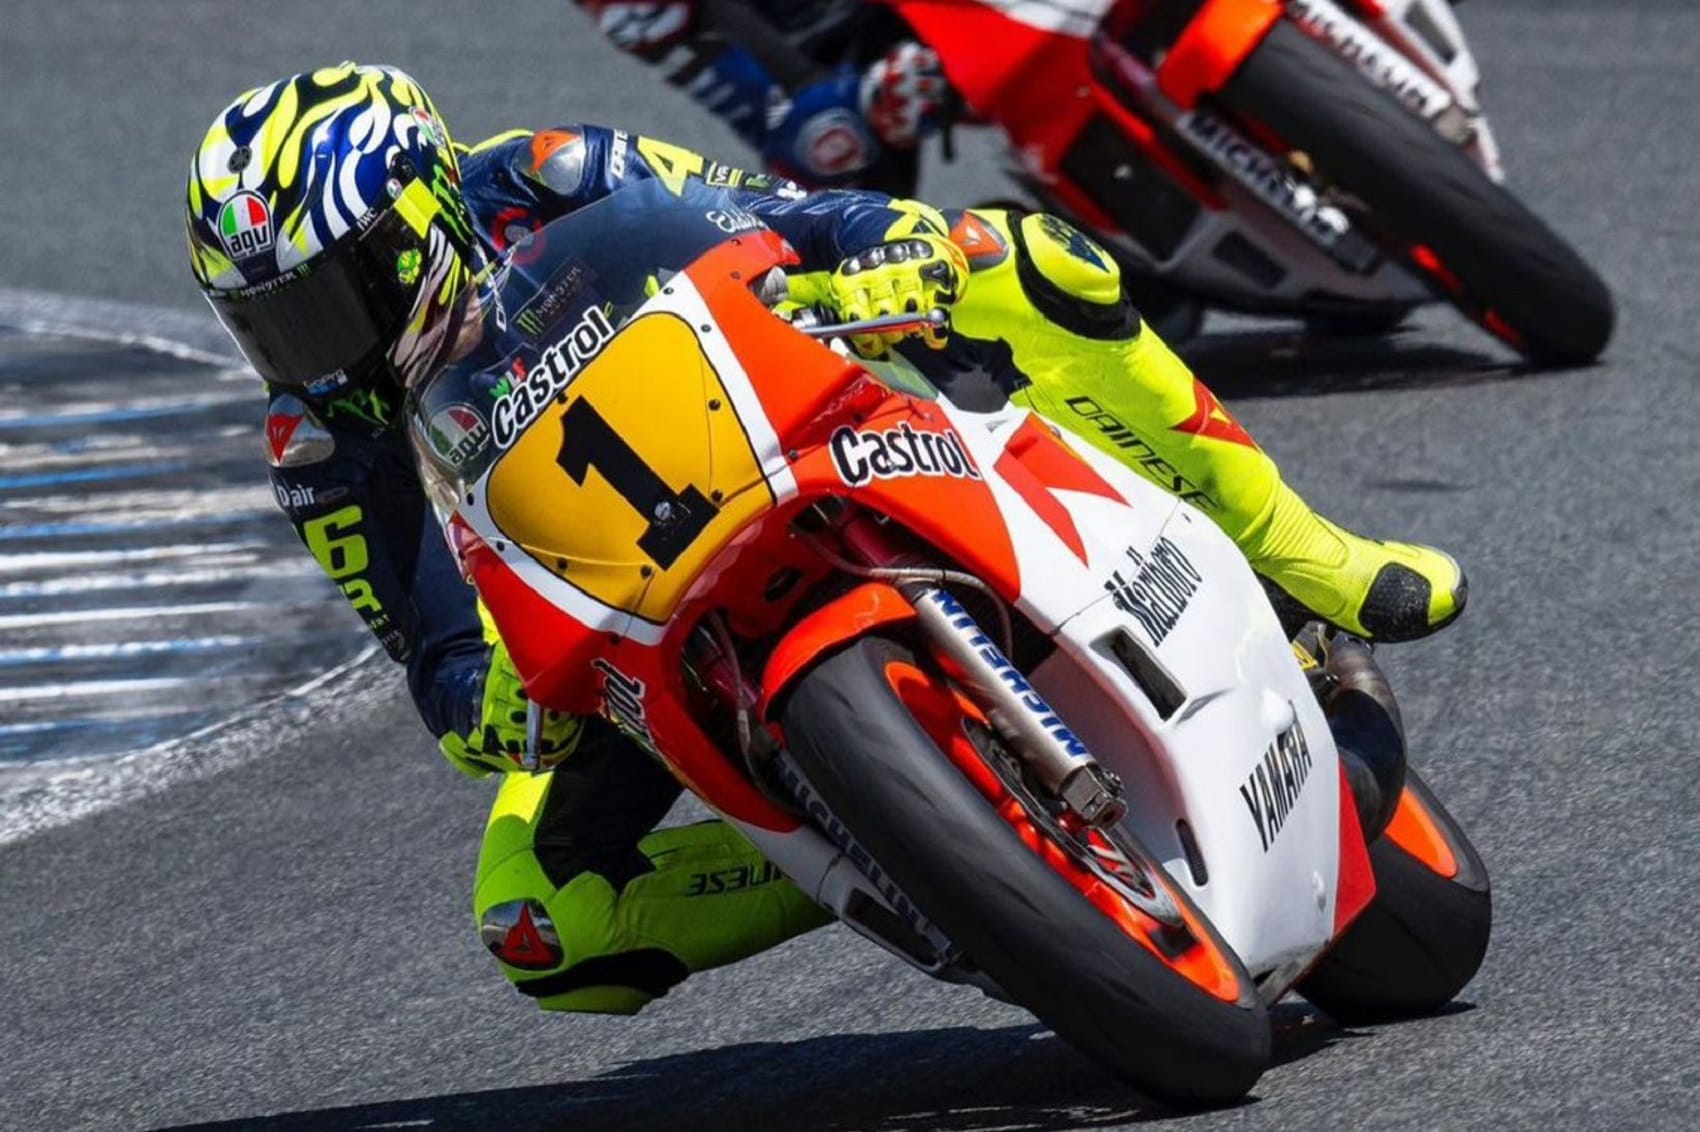 Rossi bemutatja az amerikai legenda világbajnok motorját Jerezben: látványos képek és videó